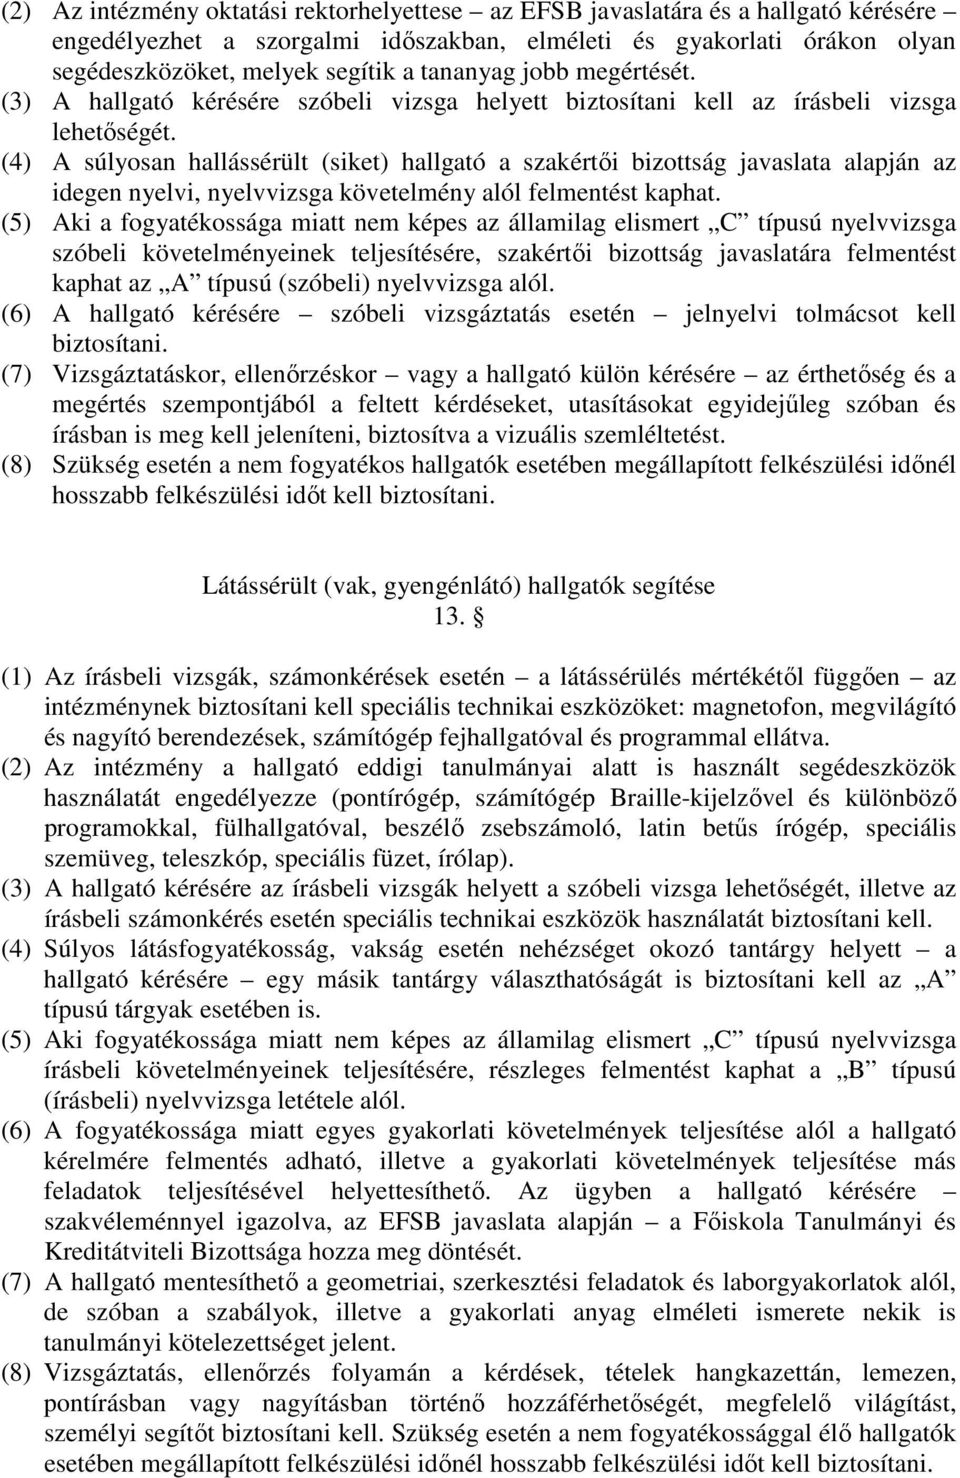 (4) A súlyosan hallássérült (siket) hallgató a szakértıi bizottság javaslata alapján az idegen nyelvi, nyelvvizsga követelmény alól felmentést kaphat.